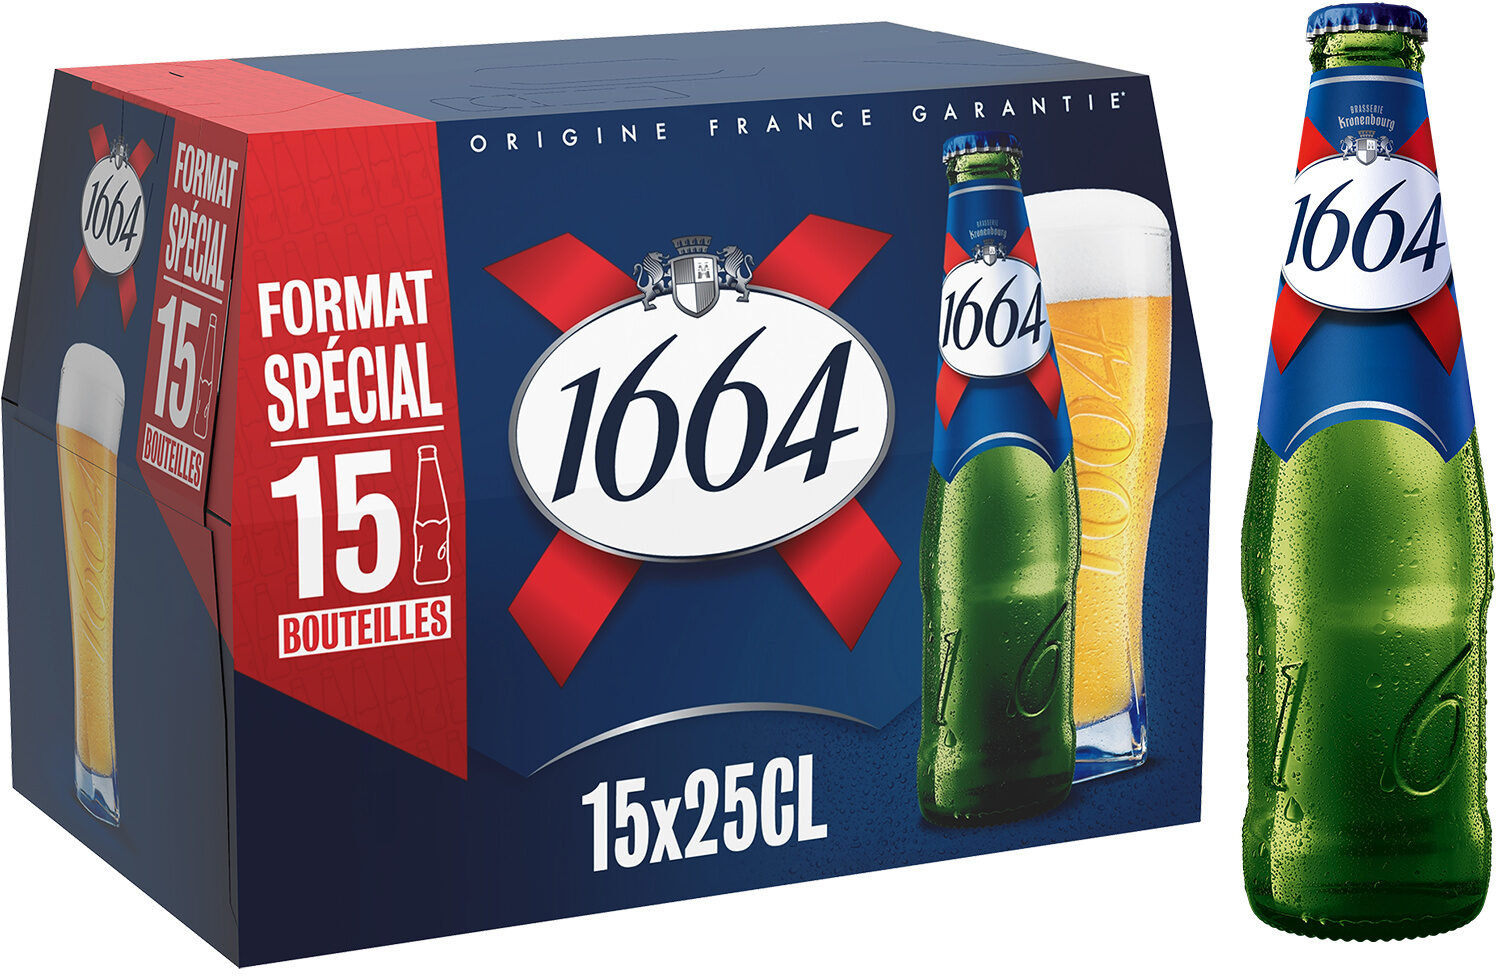 1664 15x25cl 1664 format special 5.5 degre alcool - Produit